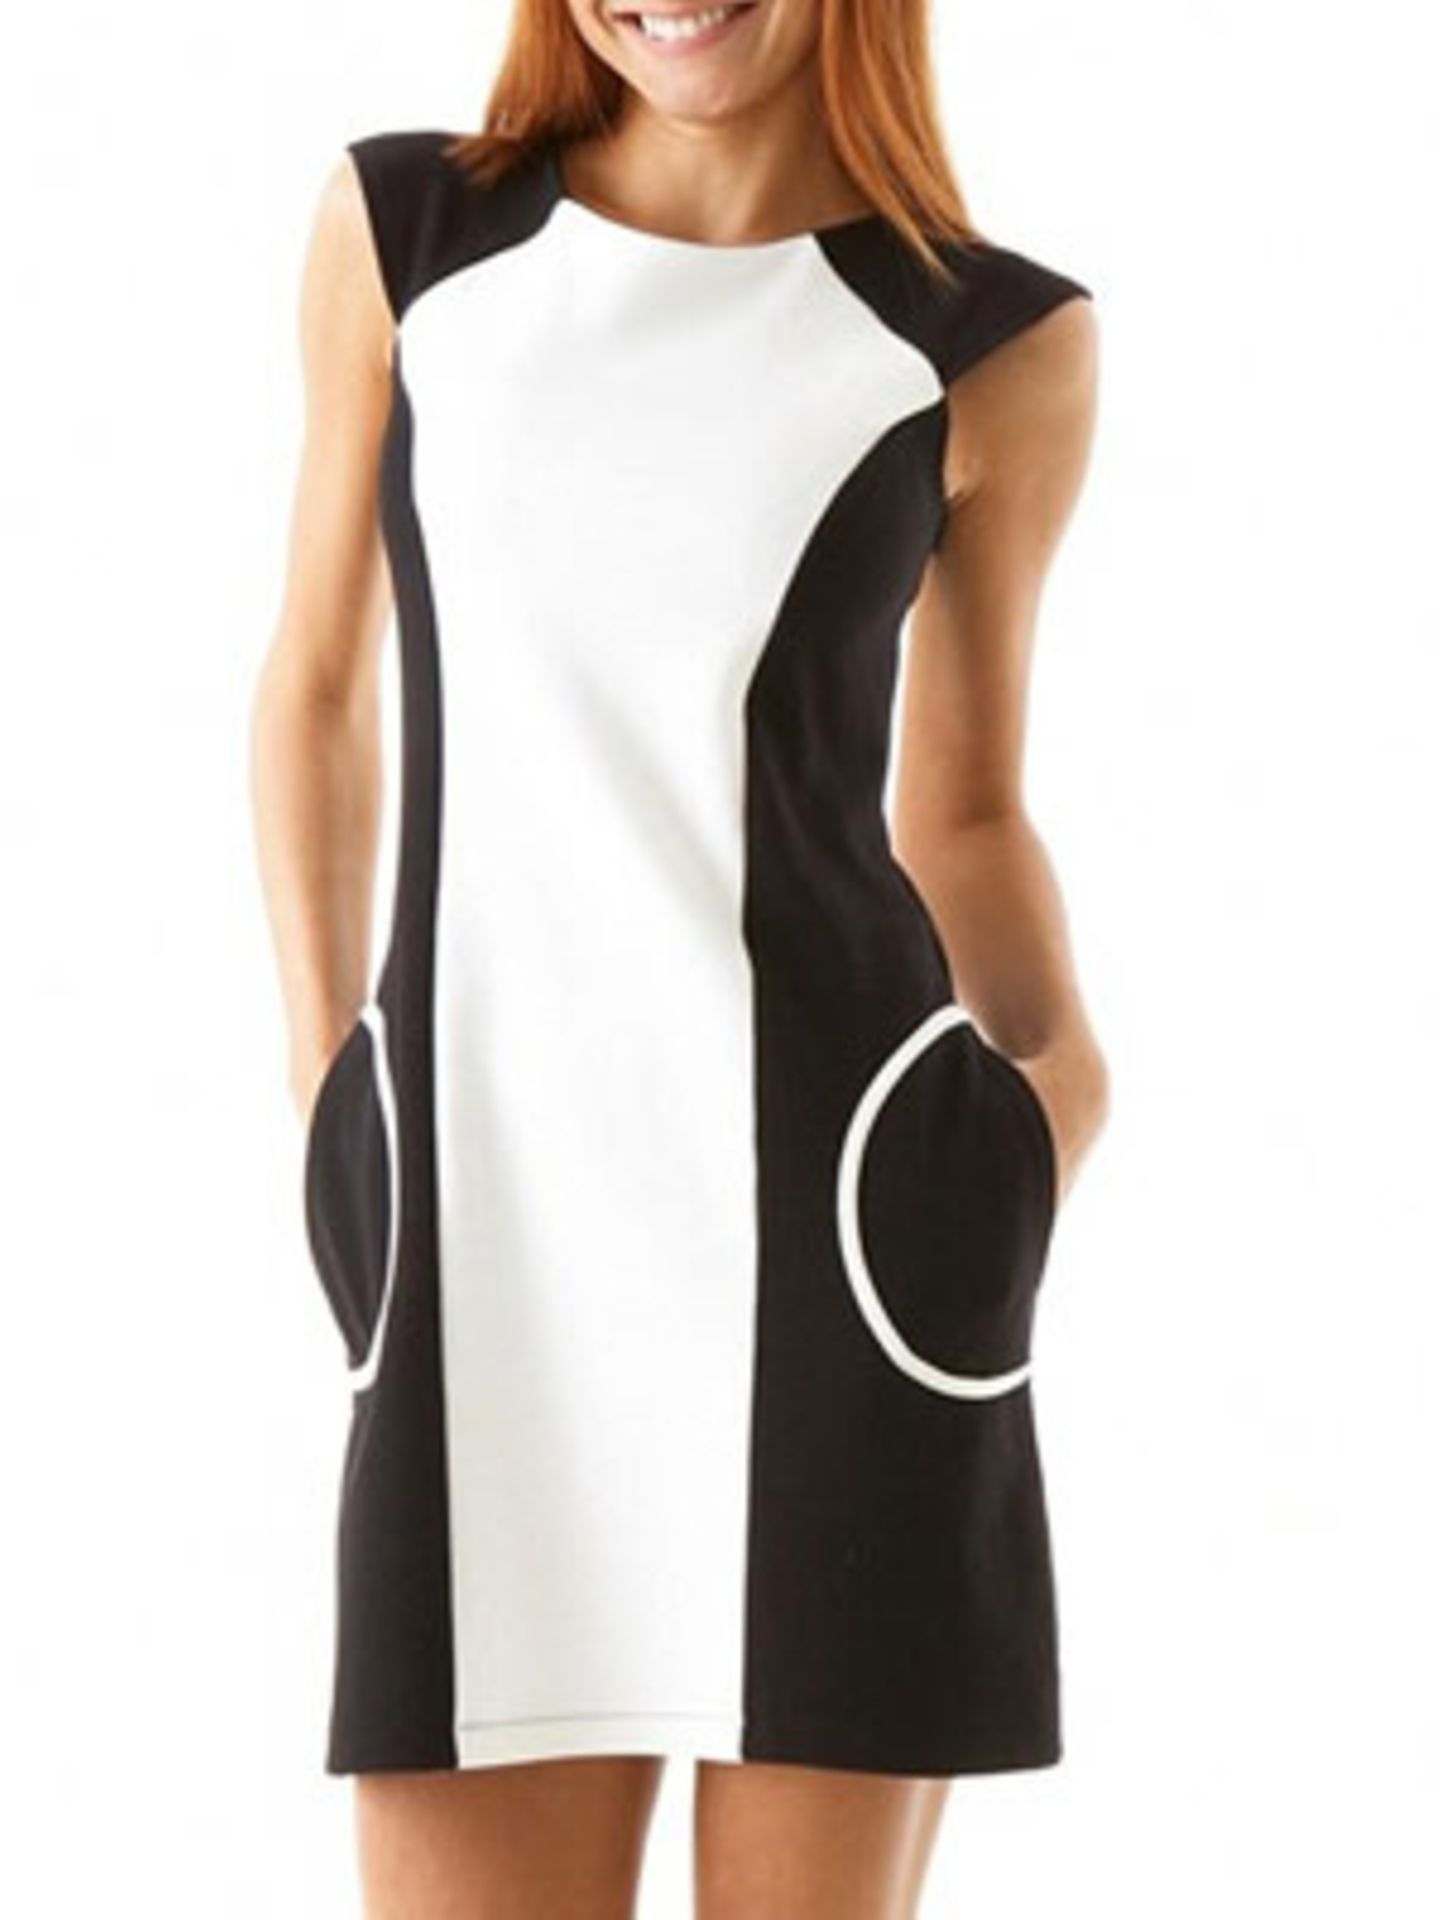 Sixties Kleid in Schwarz-Weiß; ca. 19,90 Euro; von Promod